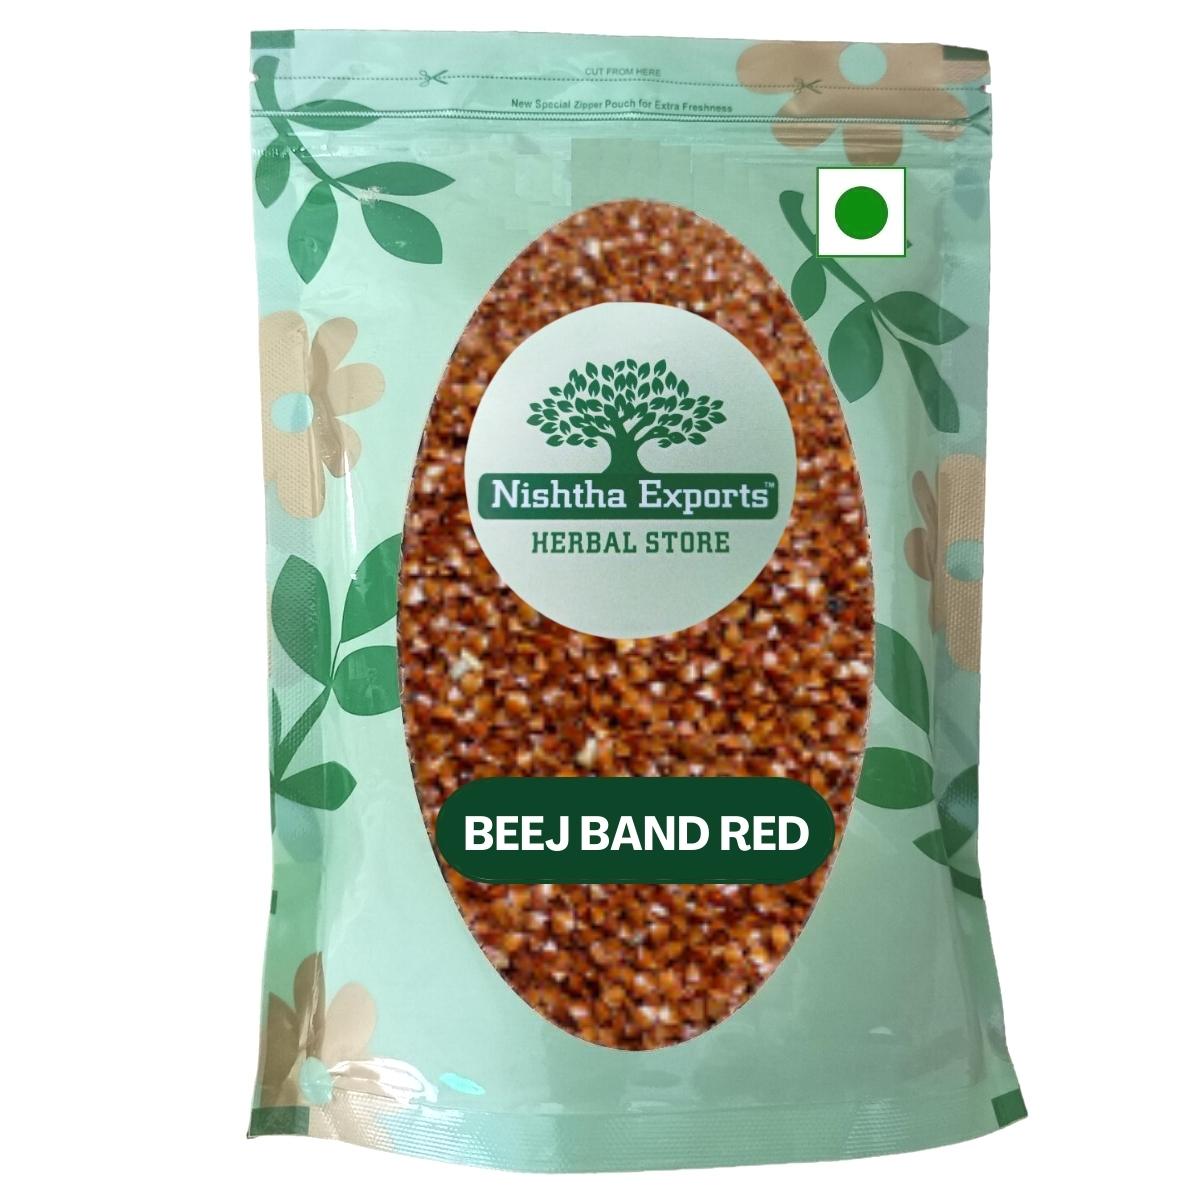 Beej Band Red - Beejband Lal Dried -बीजबंद लाल- Bijband Lal Edible - Sida cordifolia Raw Herbs-Jadi Booti